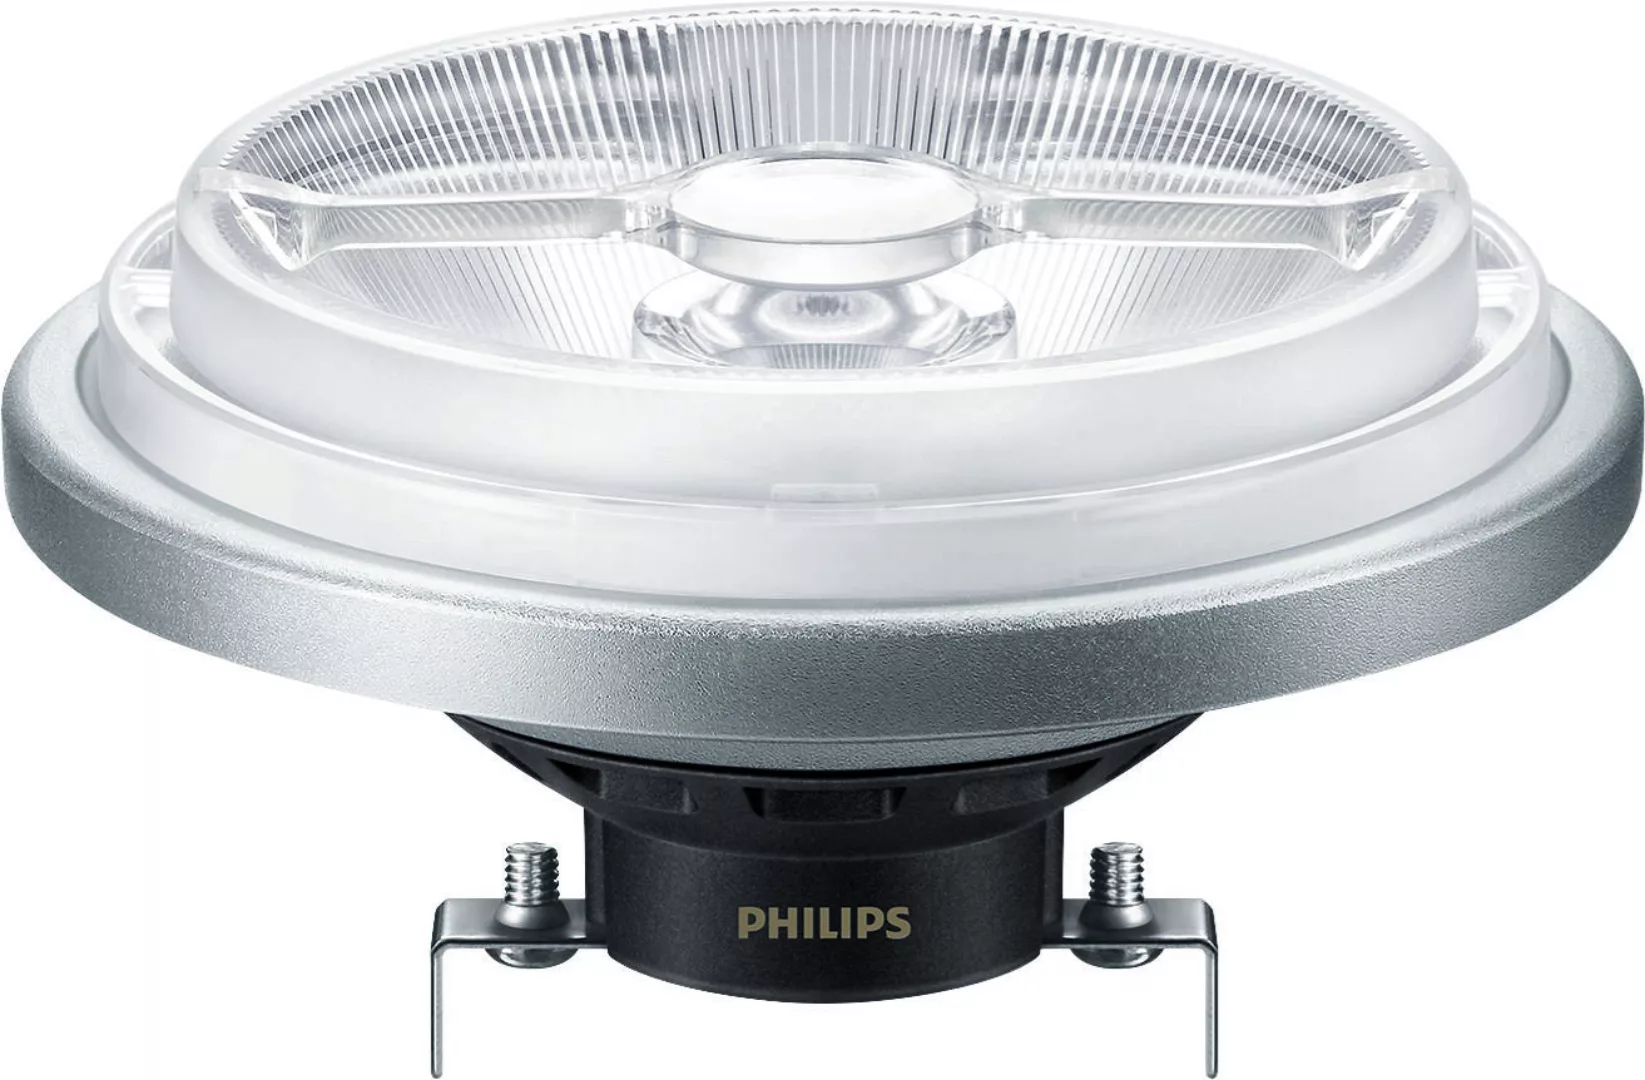 Philips Lighting LED-Reflektorlampe AR111 G53 927 DIM MAS Expert #33391800 günstig online kaufen